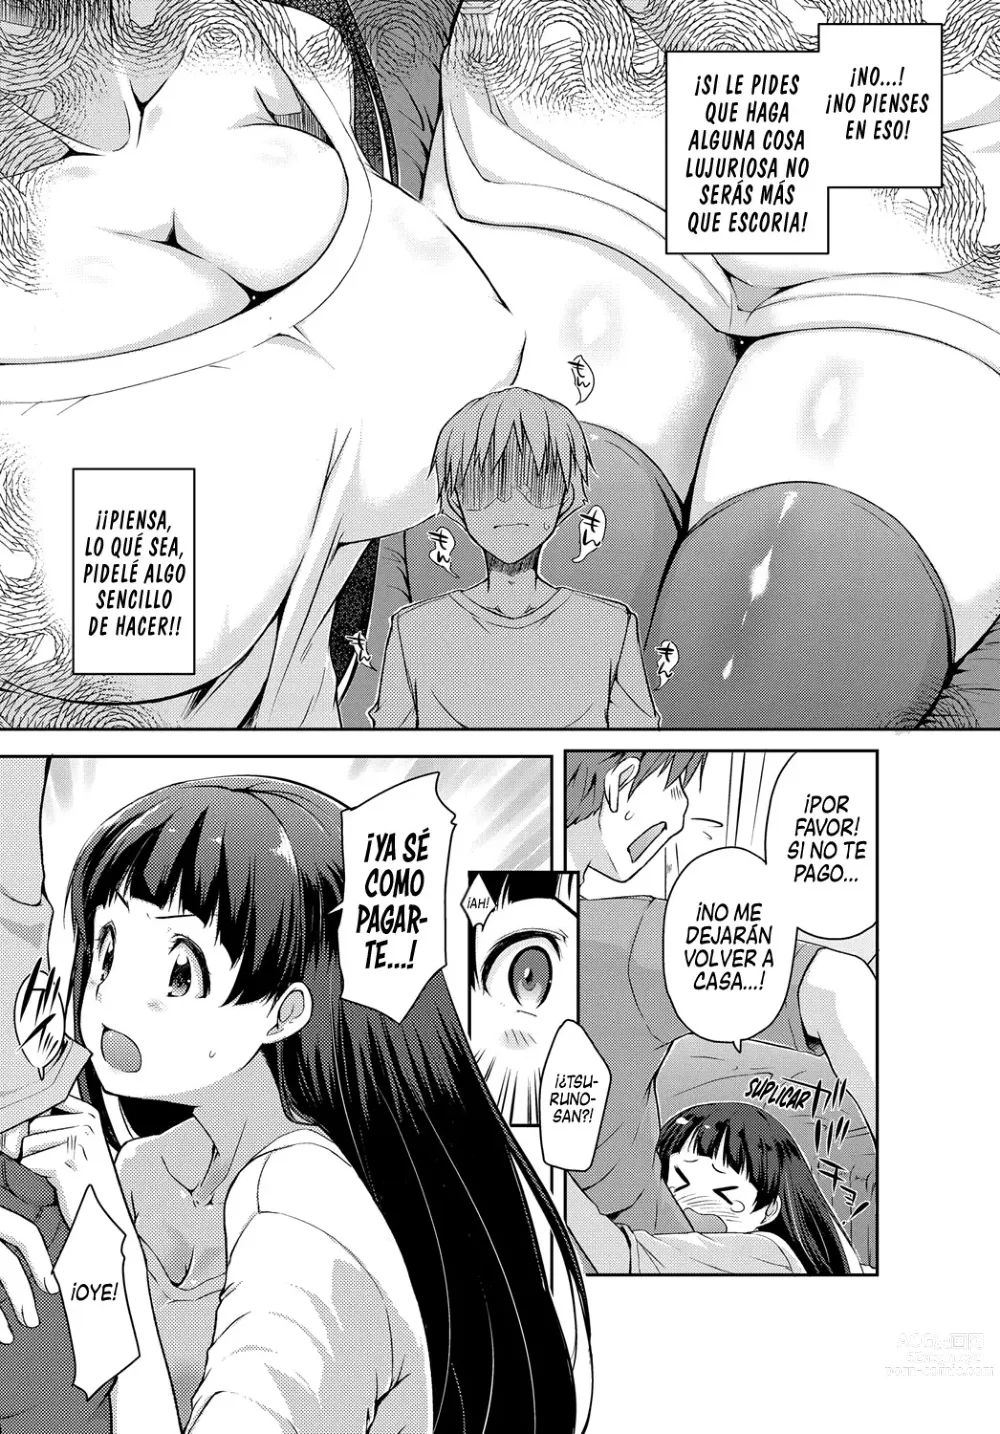 Page 5 of manga Tsuruno-san me quiere Pagar de Cualquier Manera.